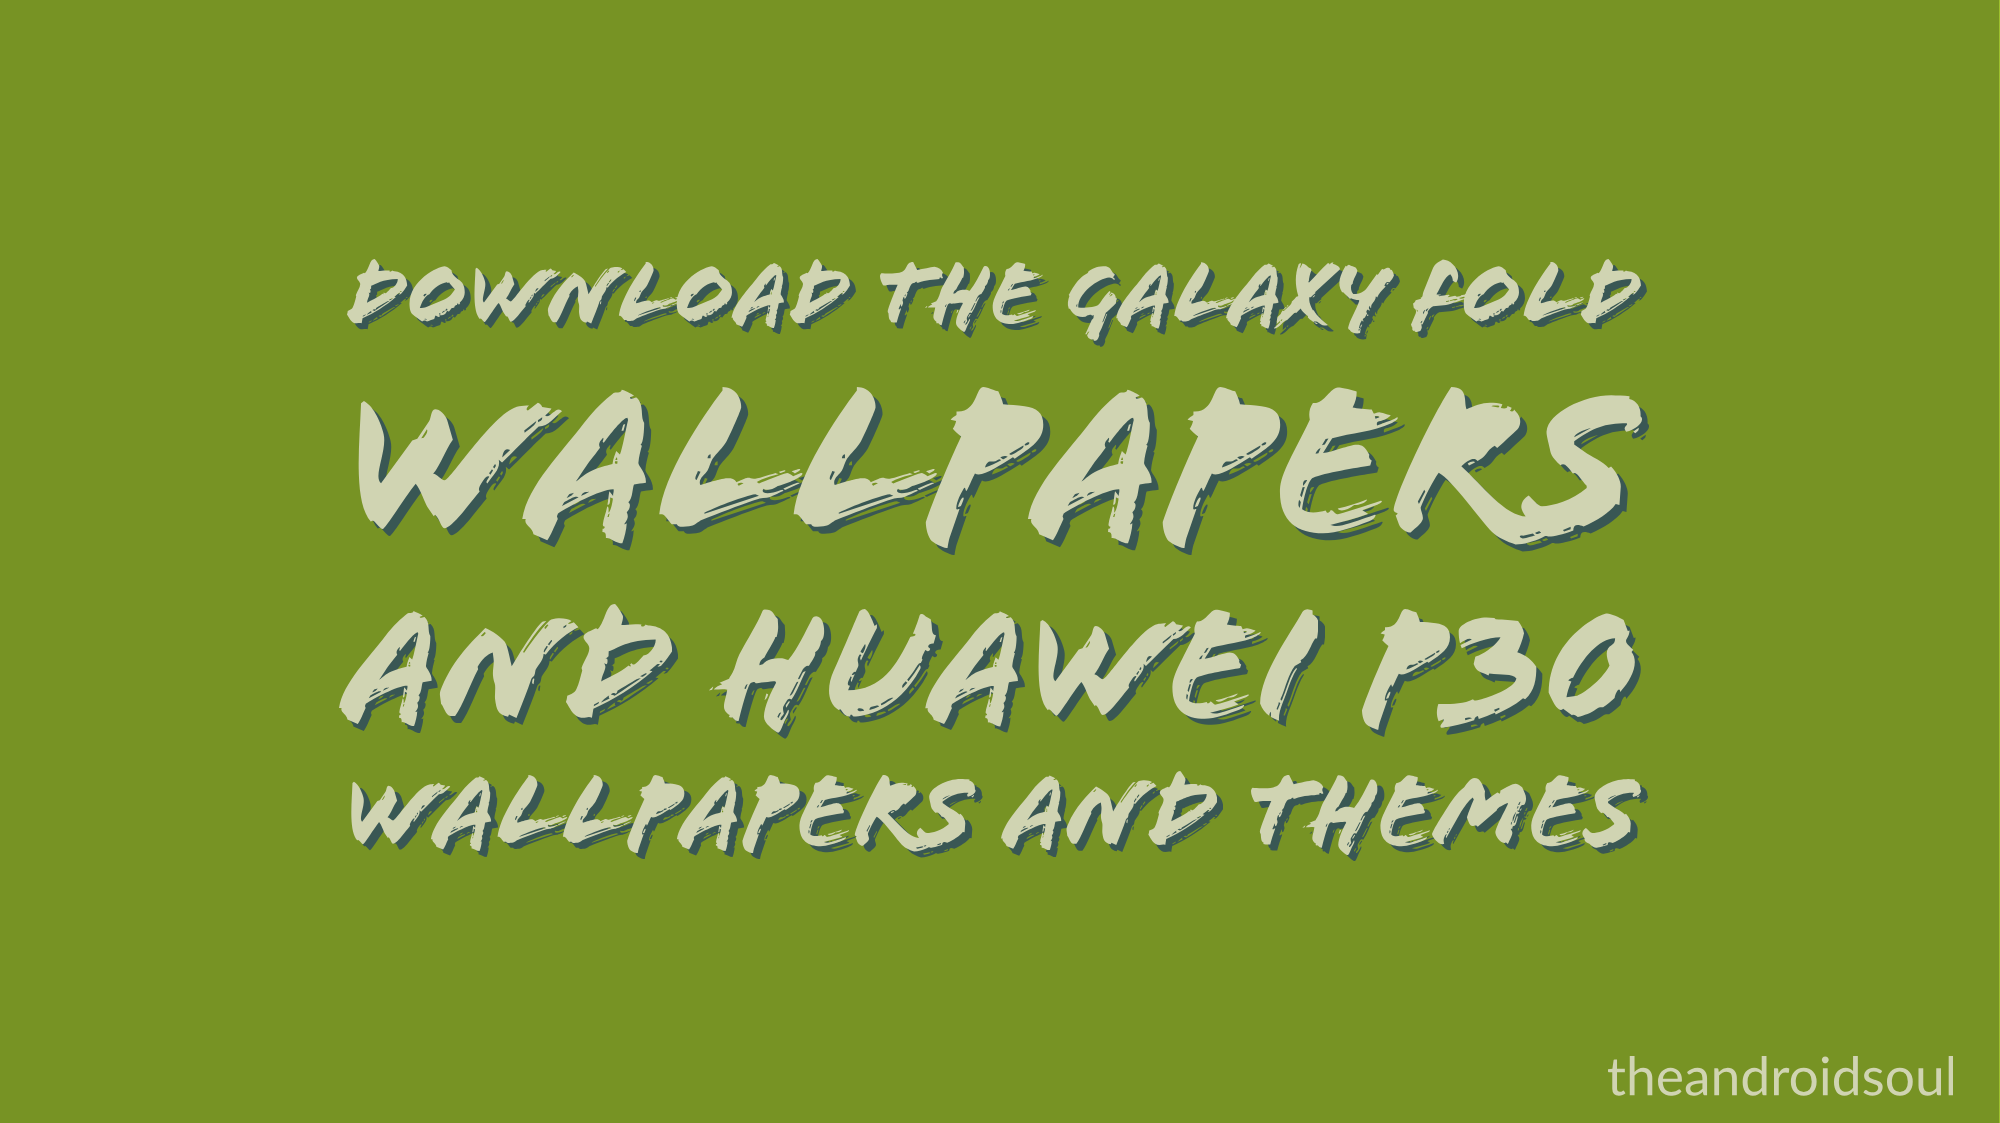 Descargar fondos de pantalla Galaxy Fold y fondos de pantalla y temas de Huawei P30